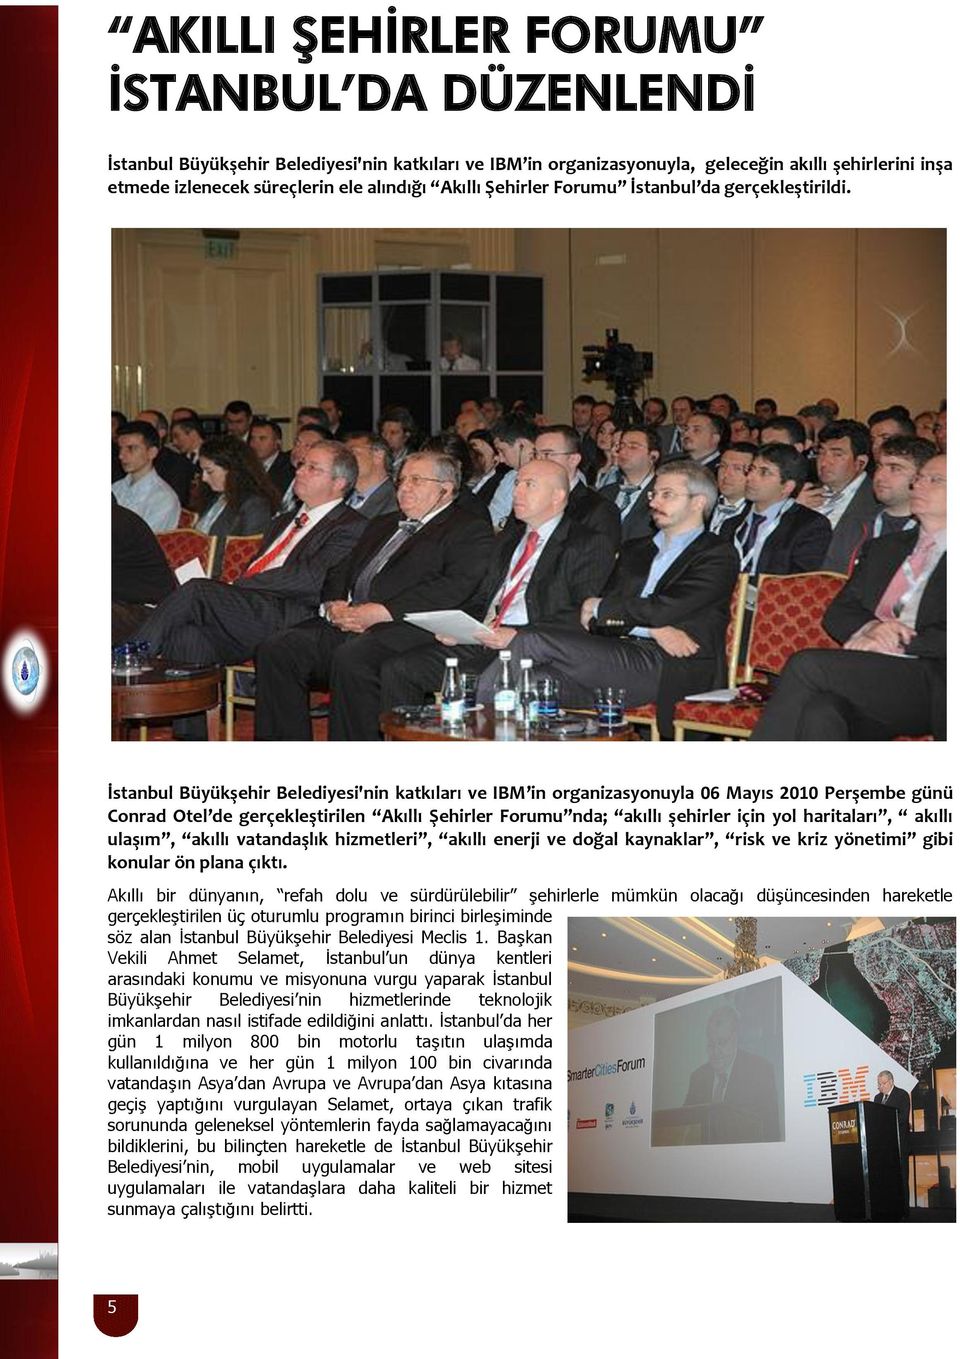 İstanbul Büyükşehir Belediyesi'nin katkıları ve IBM in organizasyonuyla 06 Mayıs 2010 Perşembe günü Conrad Otel de gerçekleştirilen Akıllı Şehirler Forumu nda; akıllı şehirler için yol haritaları,